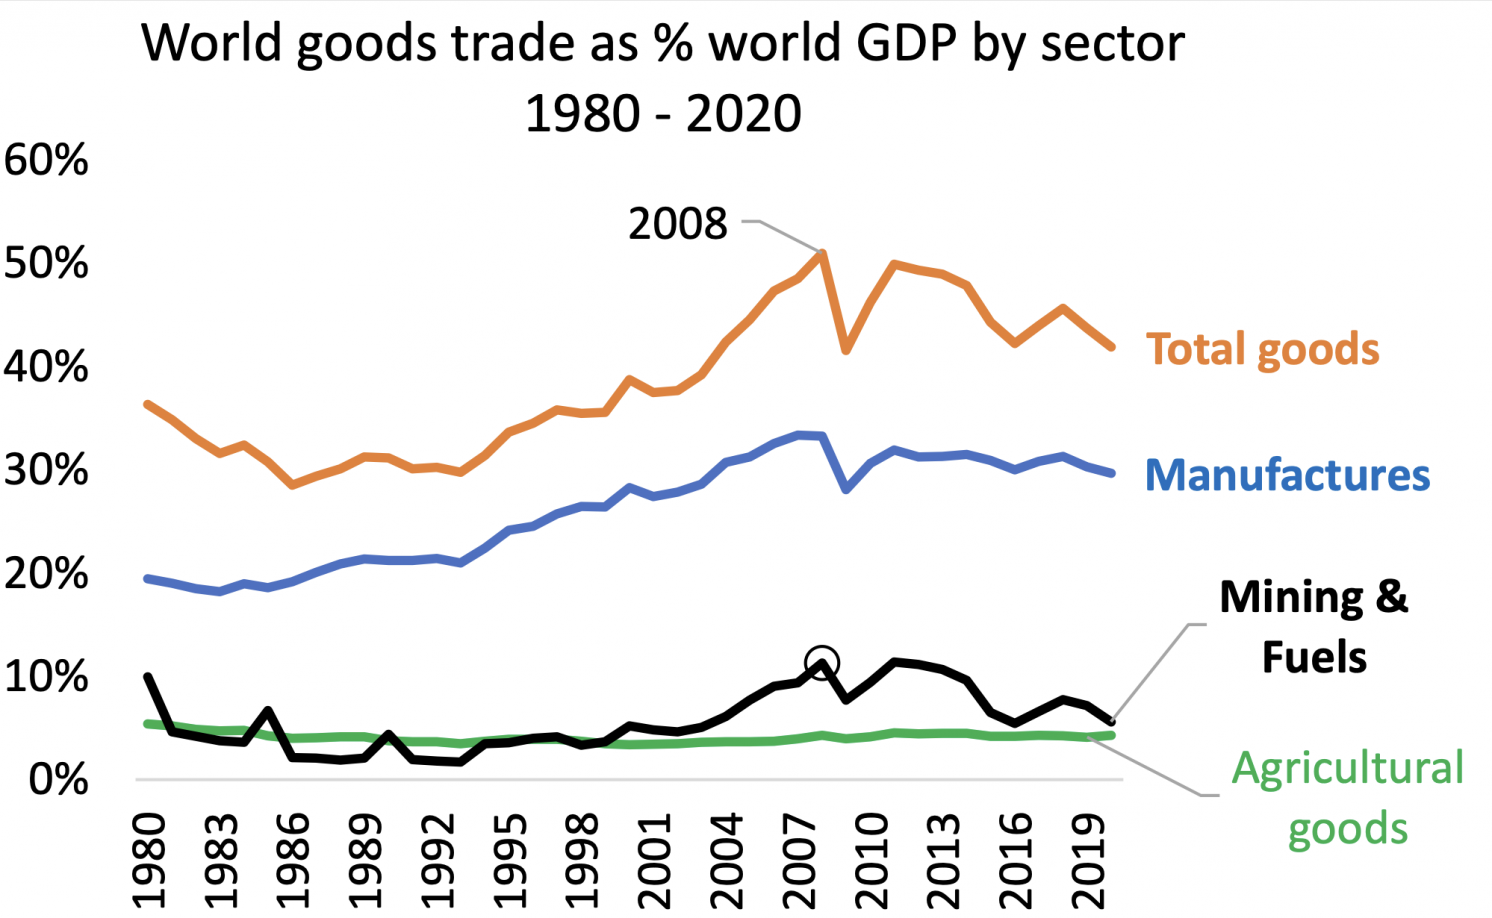 图3 1980-2020年各部门世界货物贸易占世界GDP的比例